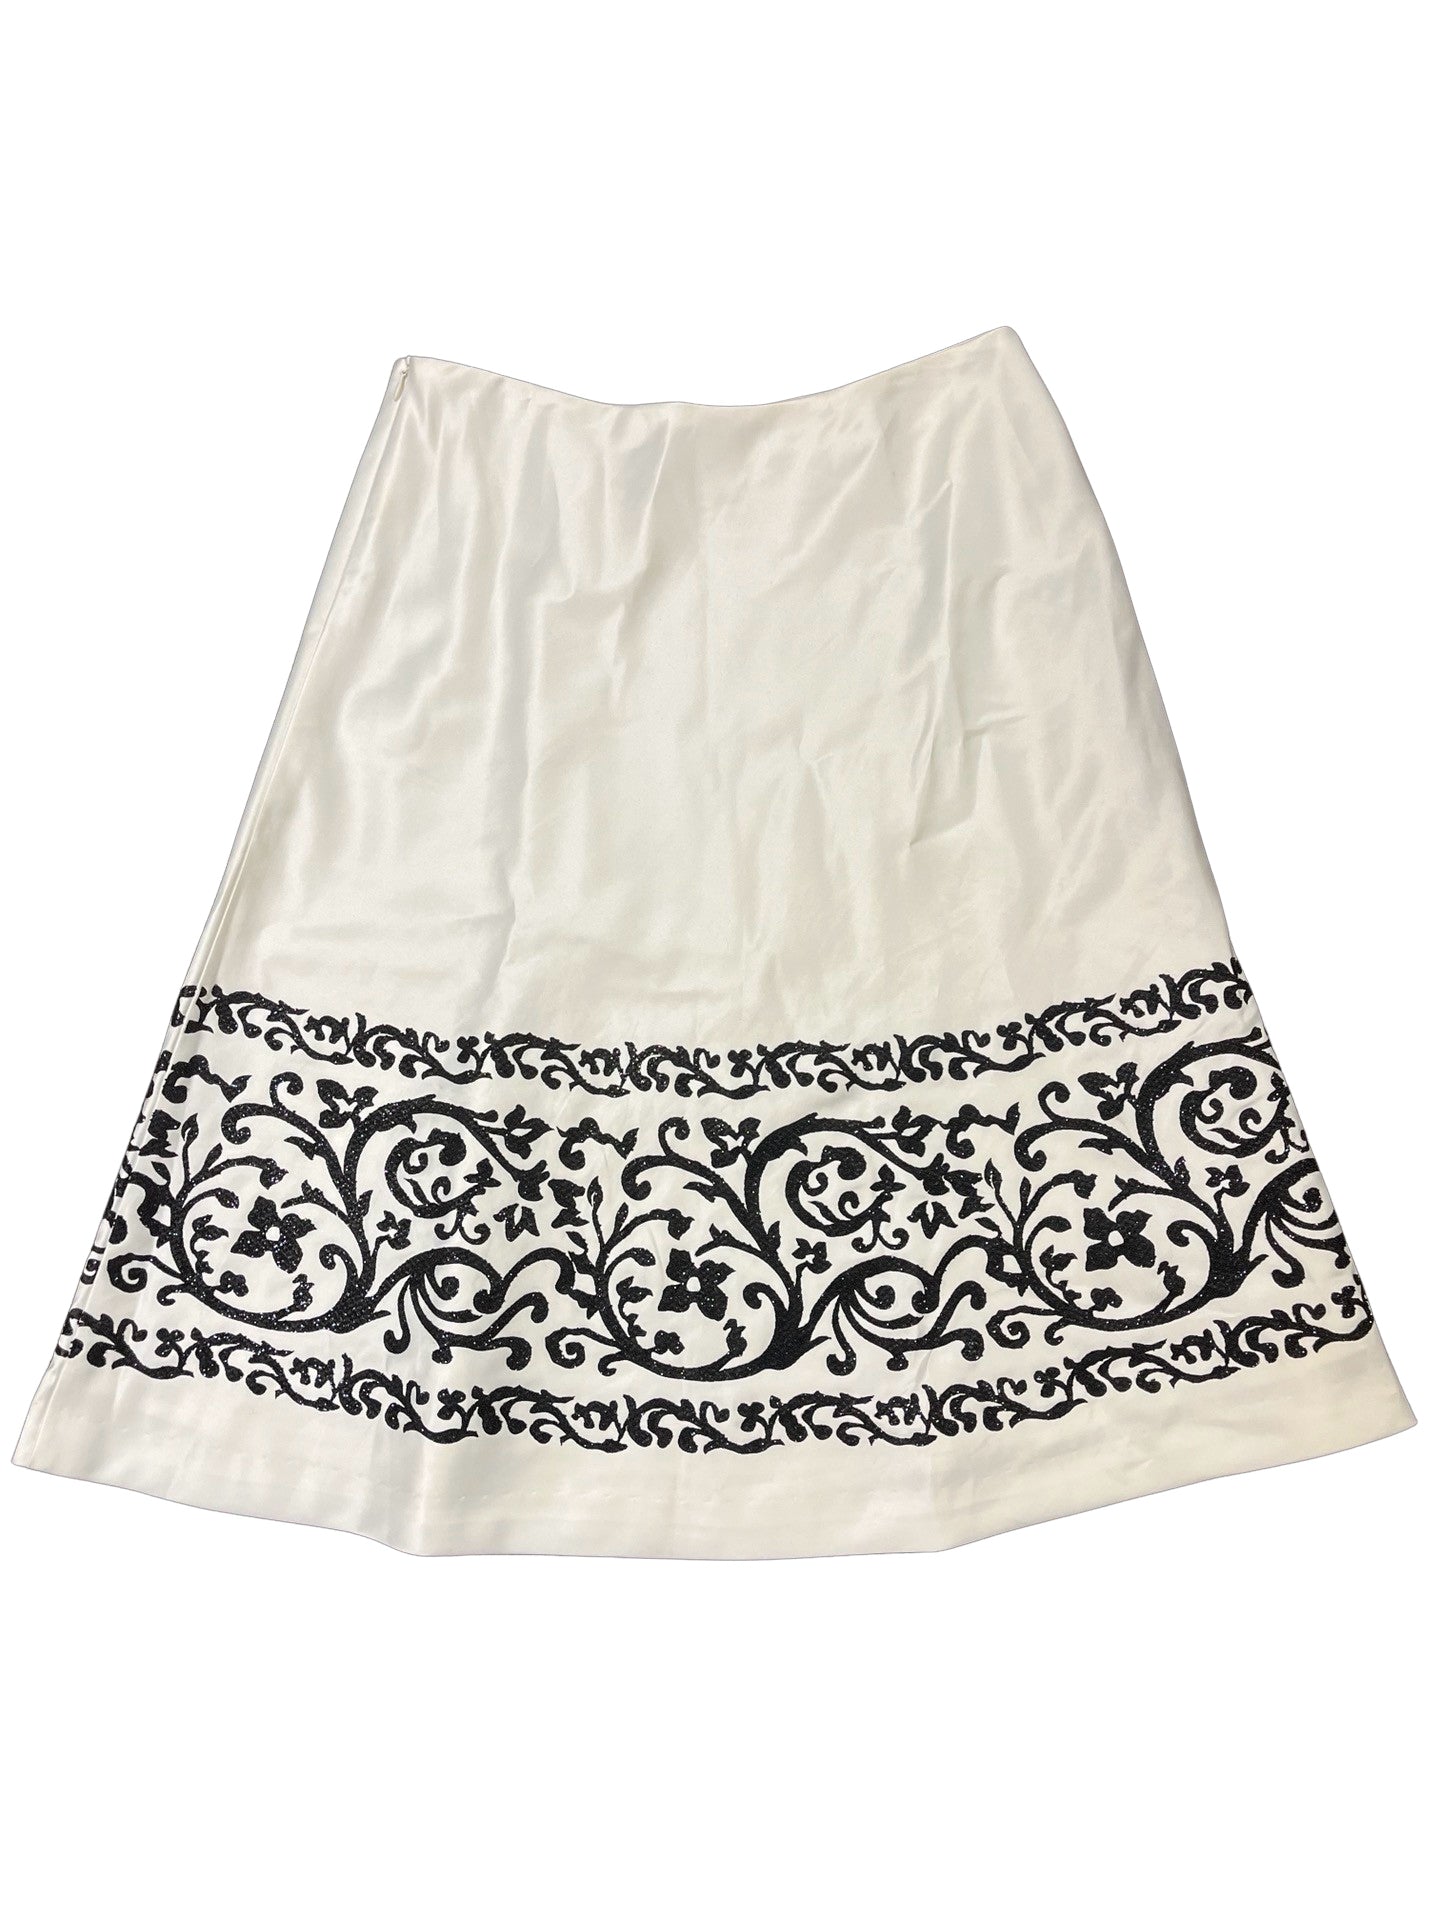 Size 6 White House Skirt